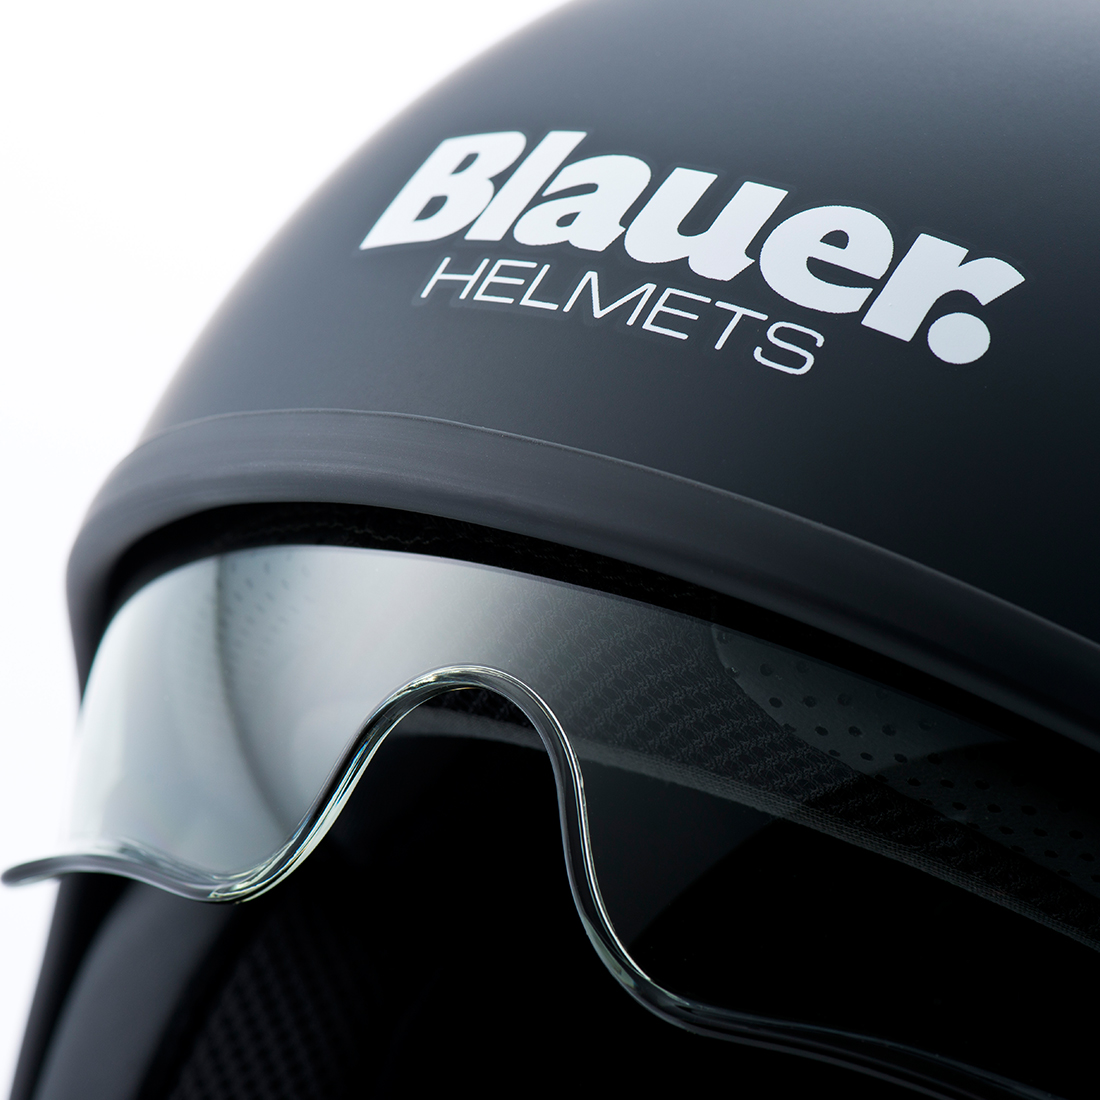 Steelbird Blauer Pilot ISI/ECE Certified Open Face Helmet (Monochrome Matt Black)